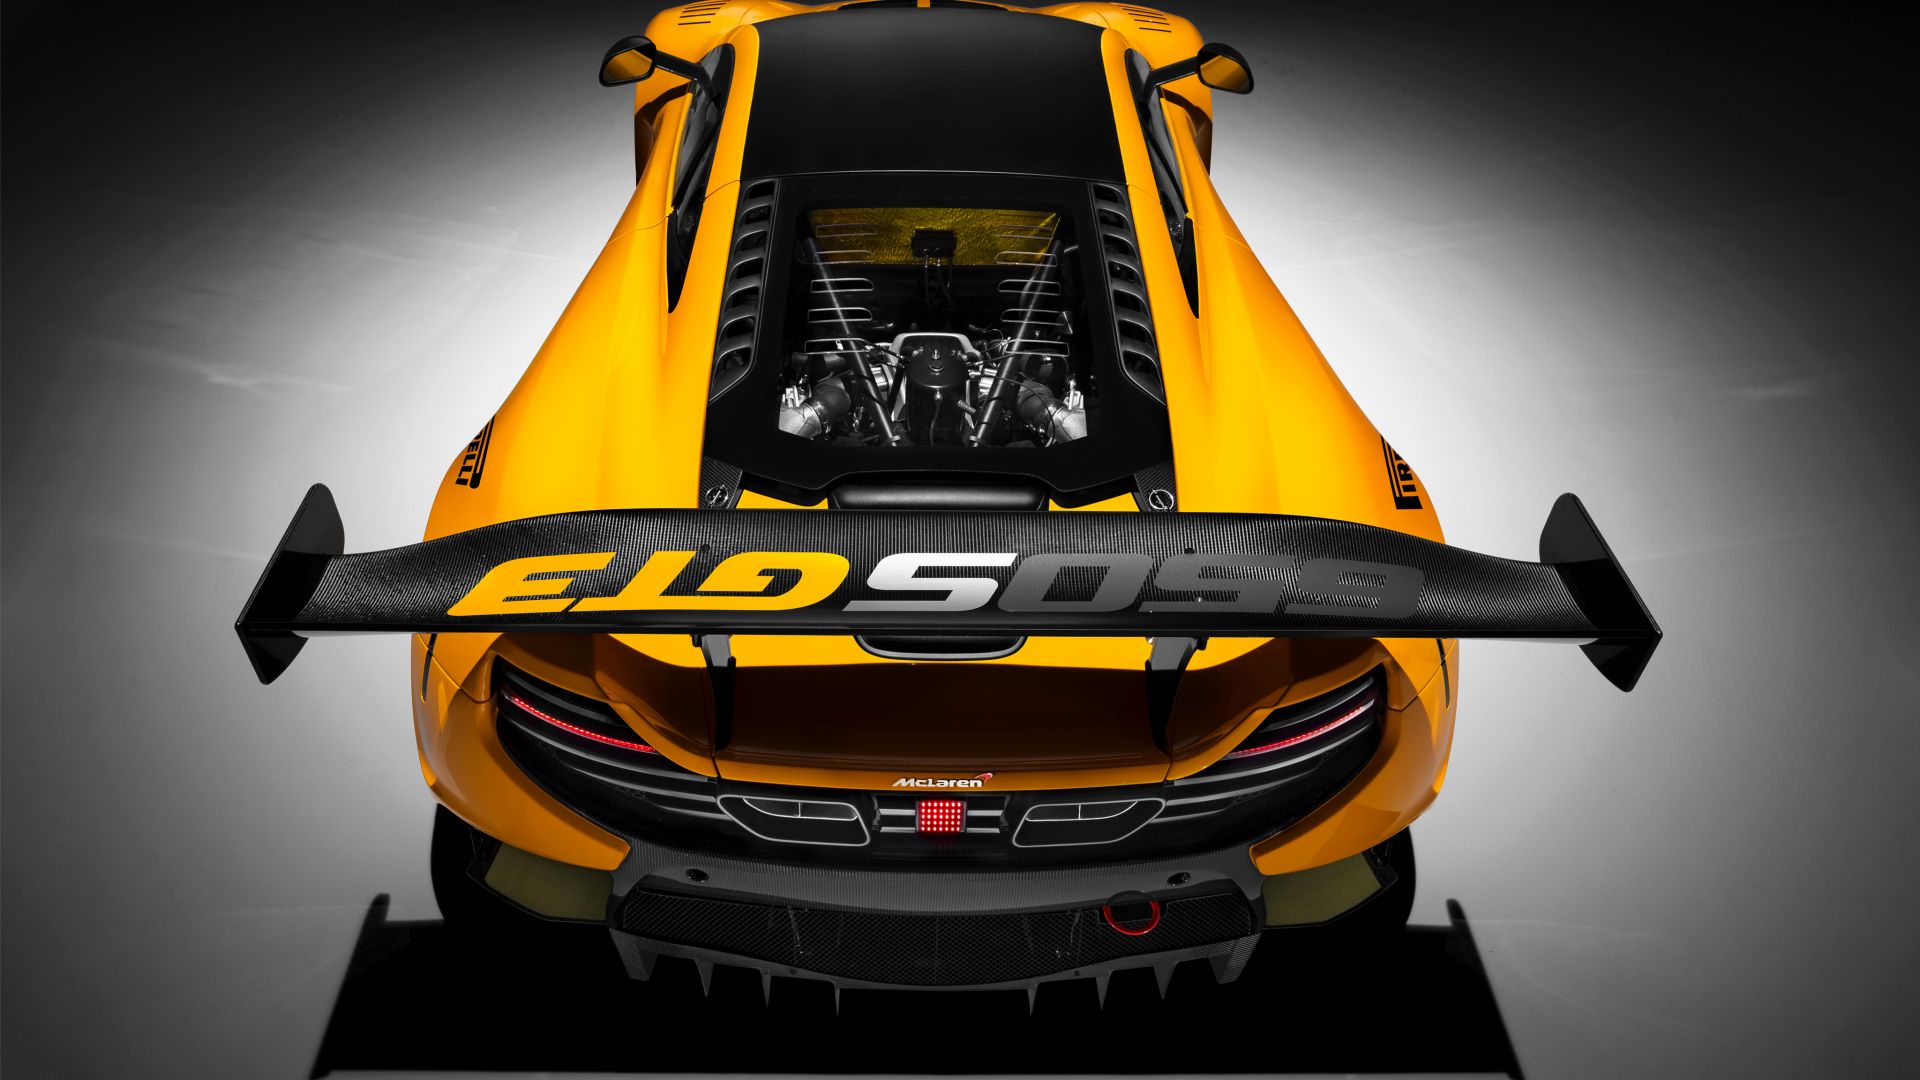 МакЛарен 650С ГТ3, Женевский автосалон 2016, спортивные автомобили, желтый, McLaren 650S GT3, Geneva International Motor Show 2016, sports car, yellow (horizontal)